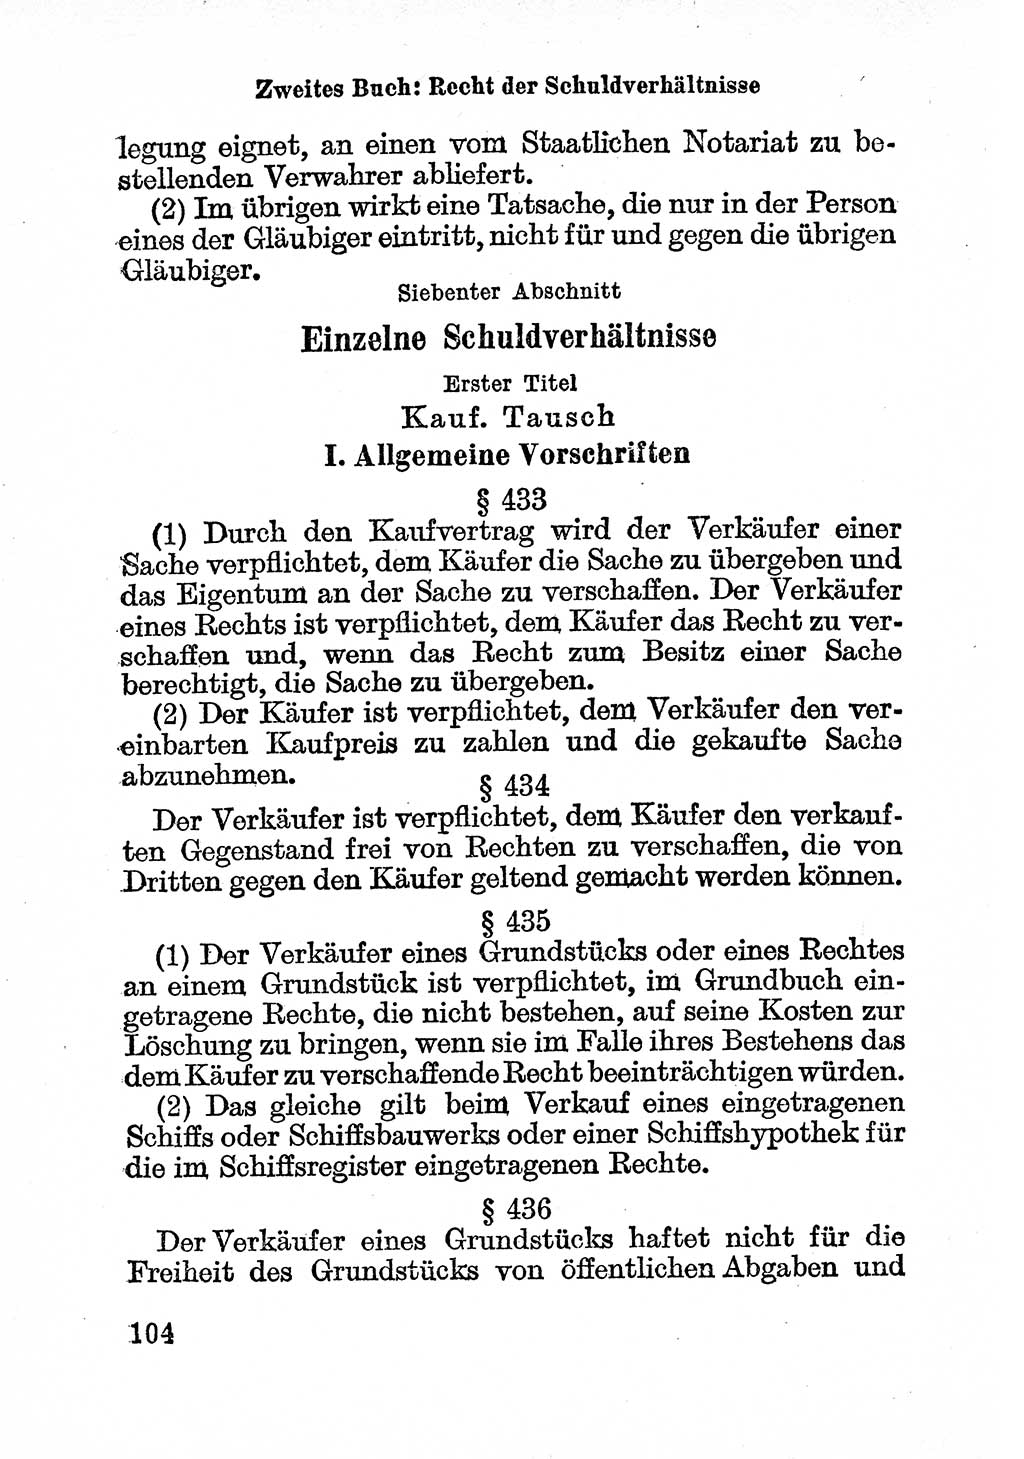 Bürgerliches Gesetzbuch (BGB) nebst wichtigen Nebengesetzen [Deutsche Demokratische Republik (DDR)] 1956, Seite 104 (BGB Nebenges. DDR 1956, S. 104)